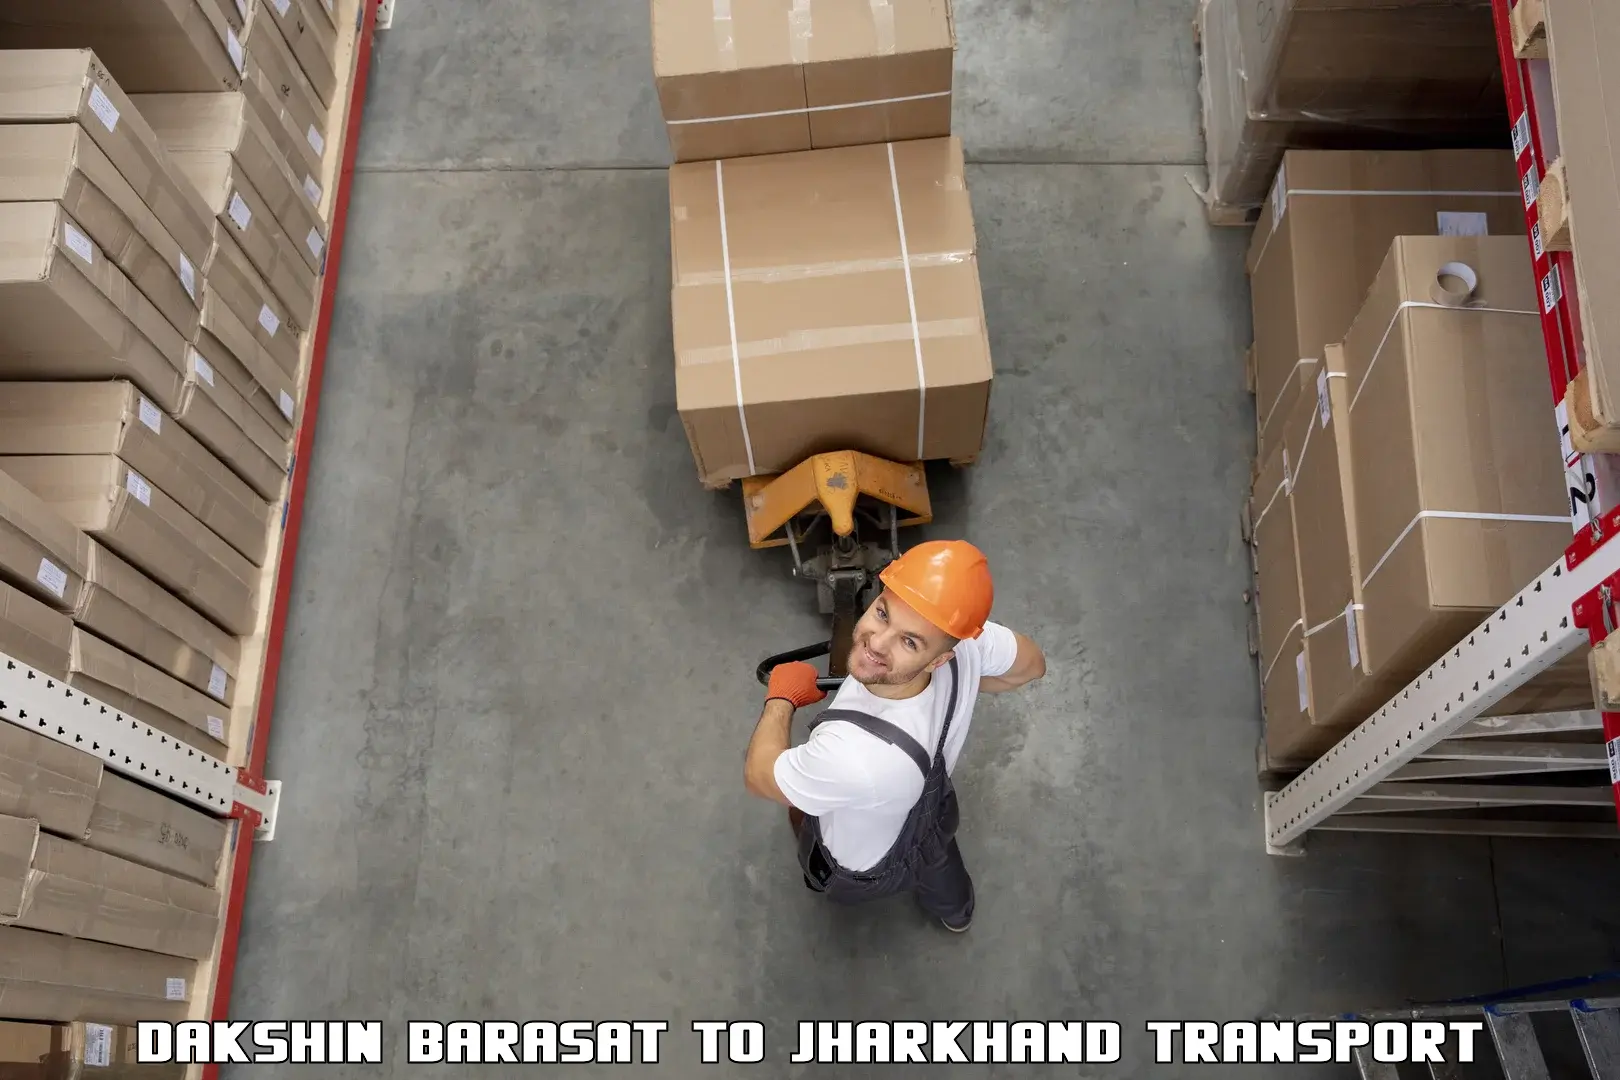 Container transport service Dakshin Barasat to Domchanch